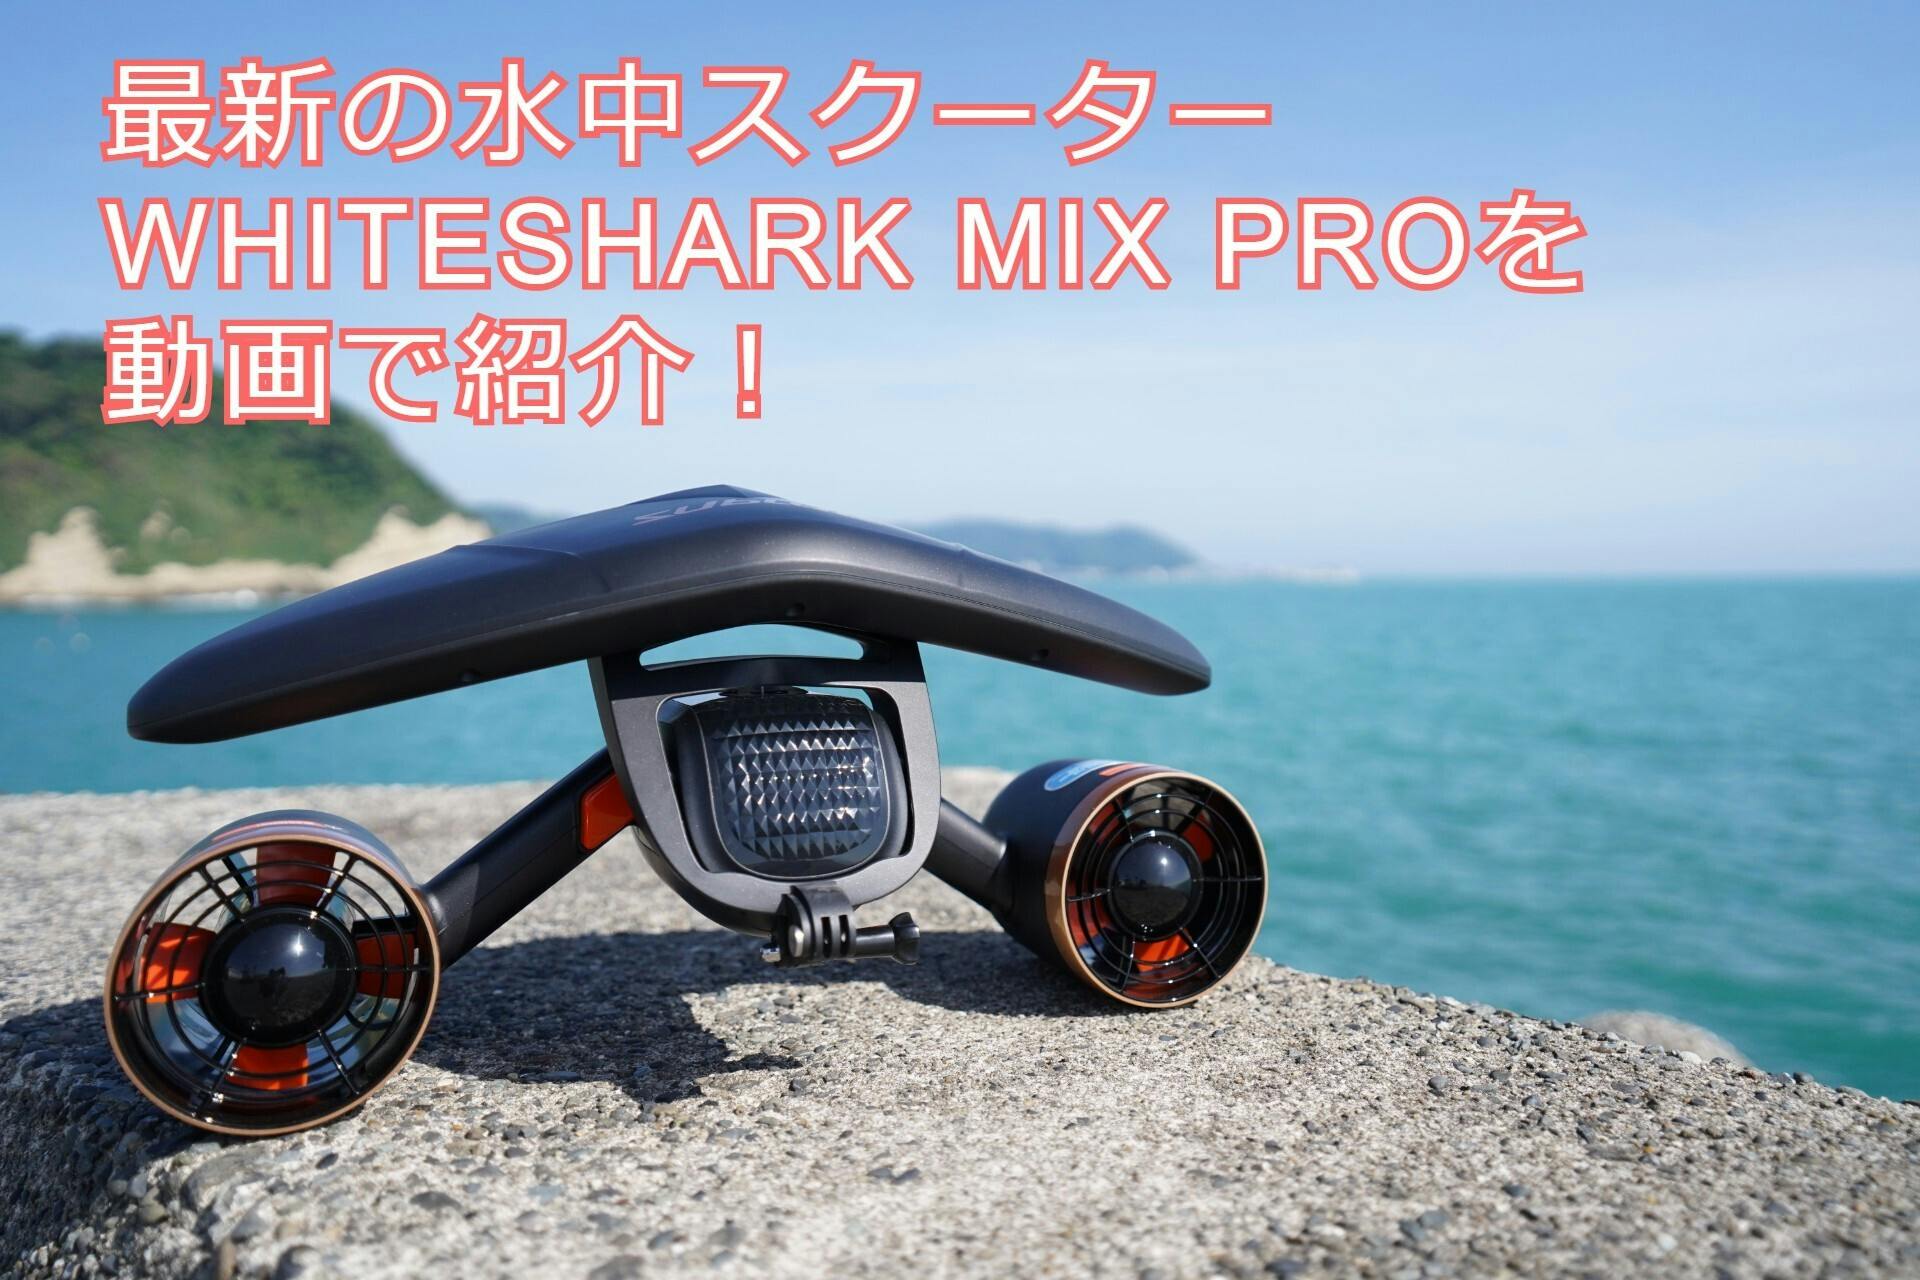 水中スクーターの最新モデル WHITESHARK MIX PRO を動画で紹介します